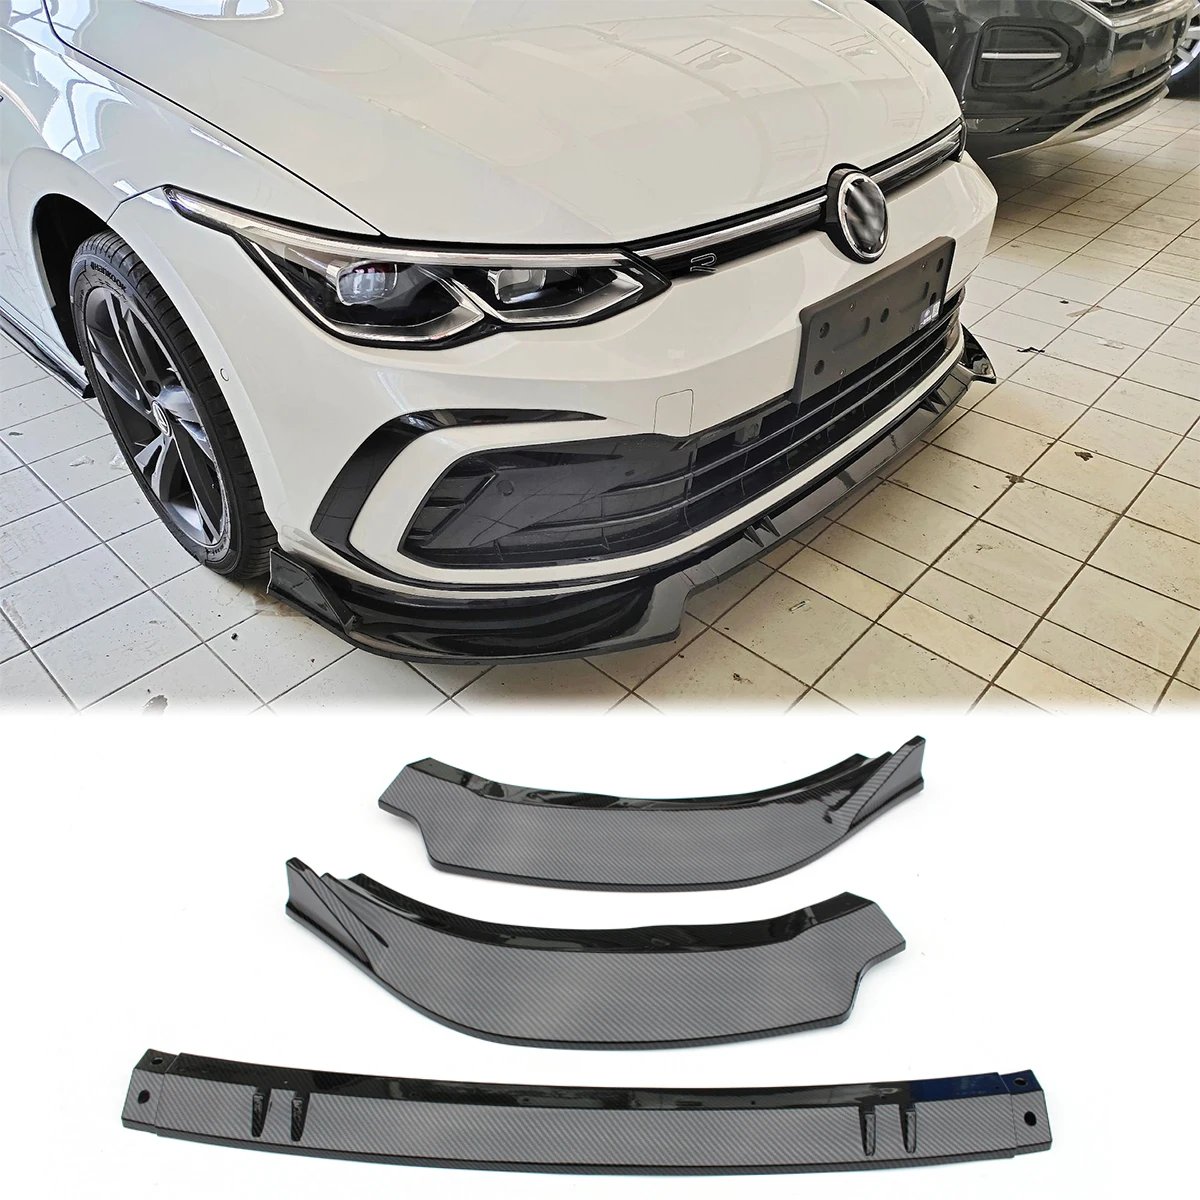 Front Bumper Lip Lower Side Splitter Spoiler Body Kit For Volkswagen VW Golf 8 MK8 R Line Pro 2020 2021 Carbon Fiber Look Black